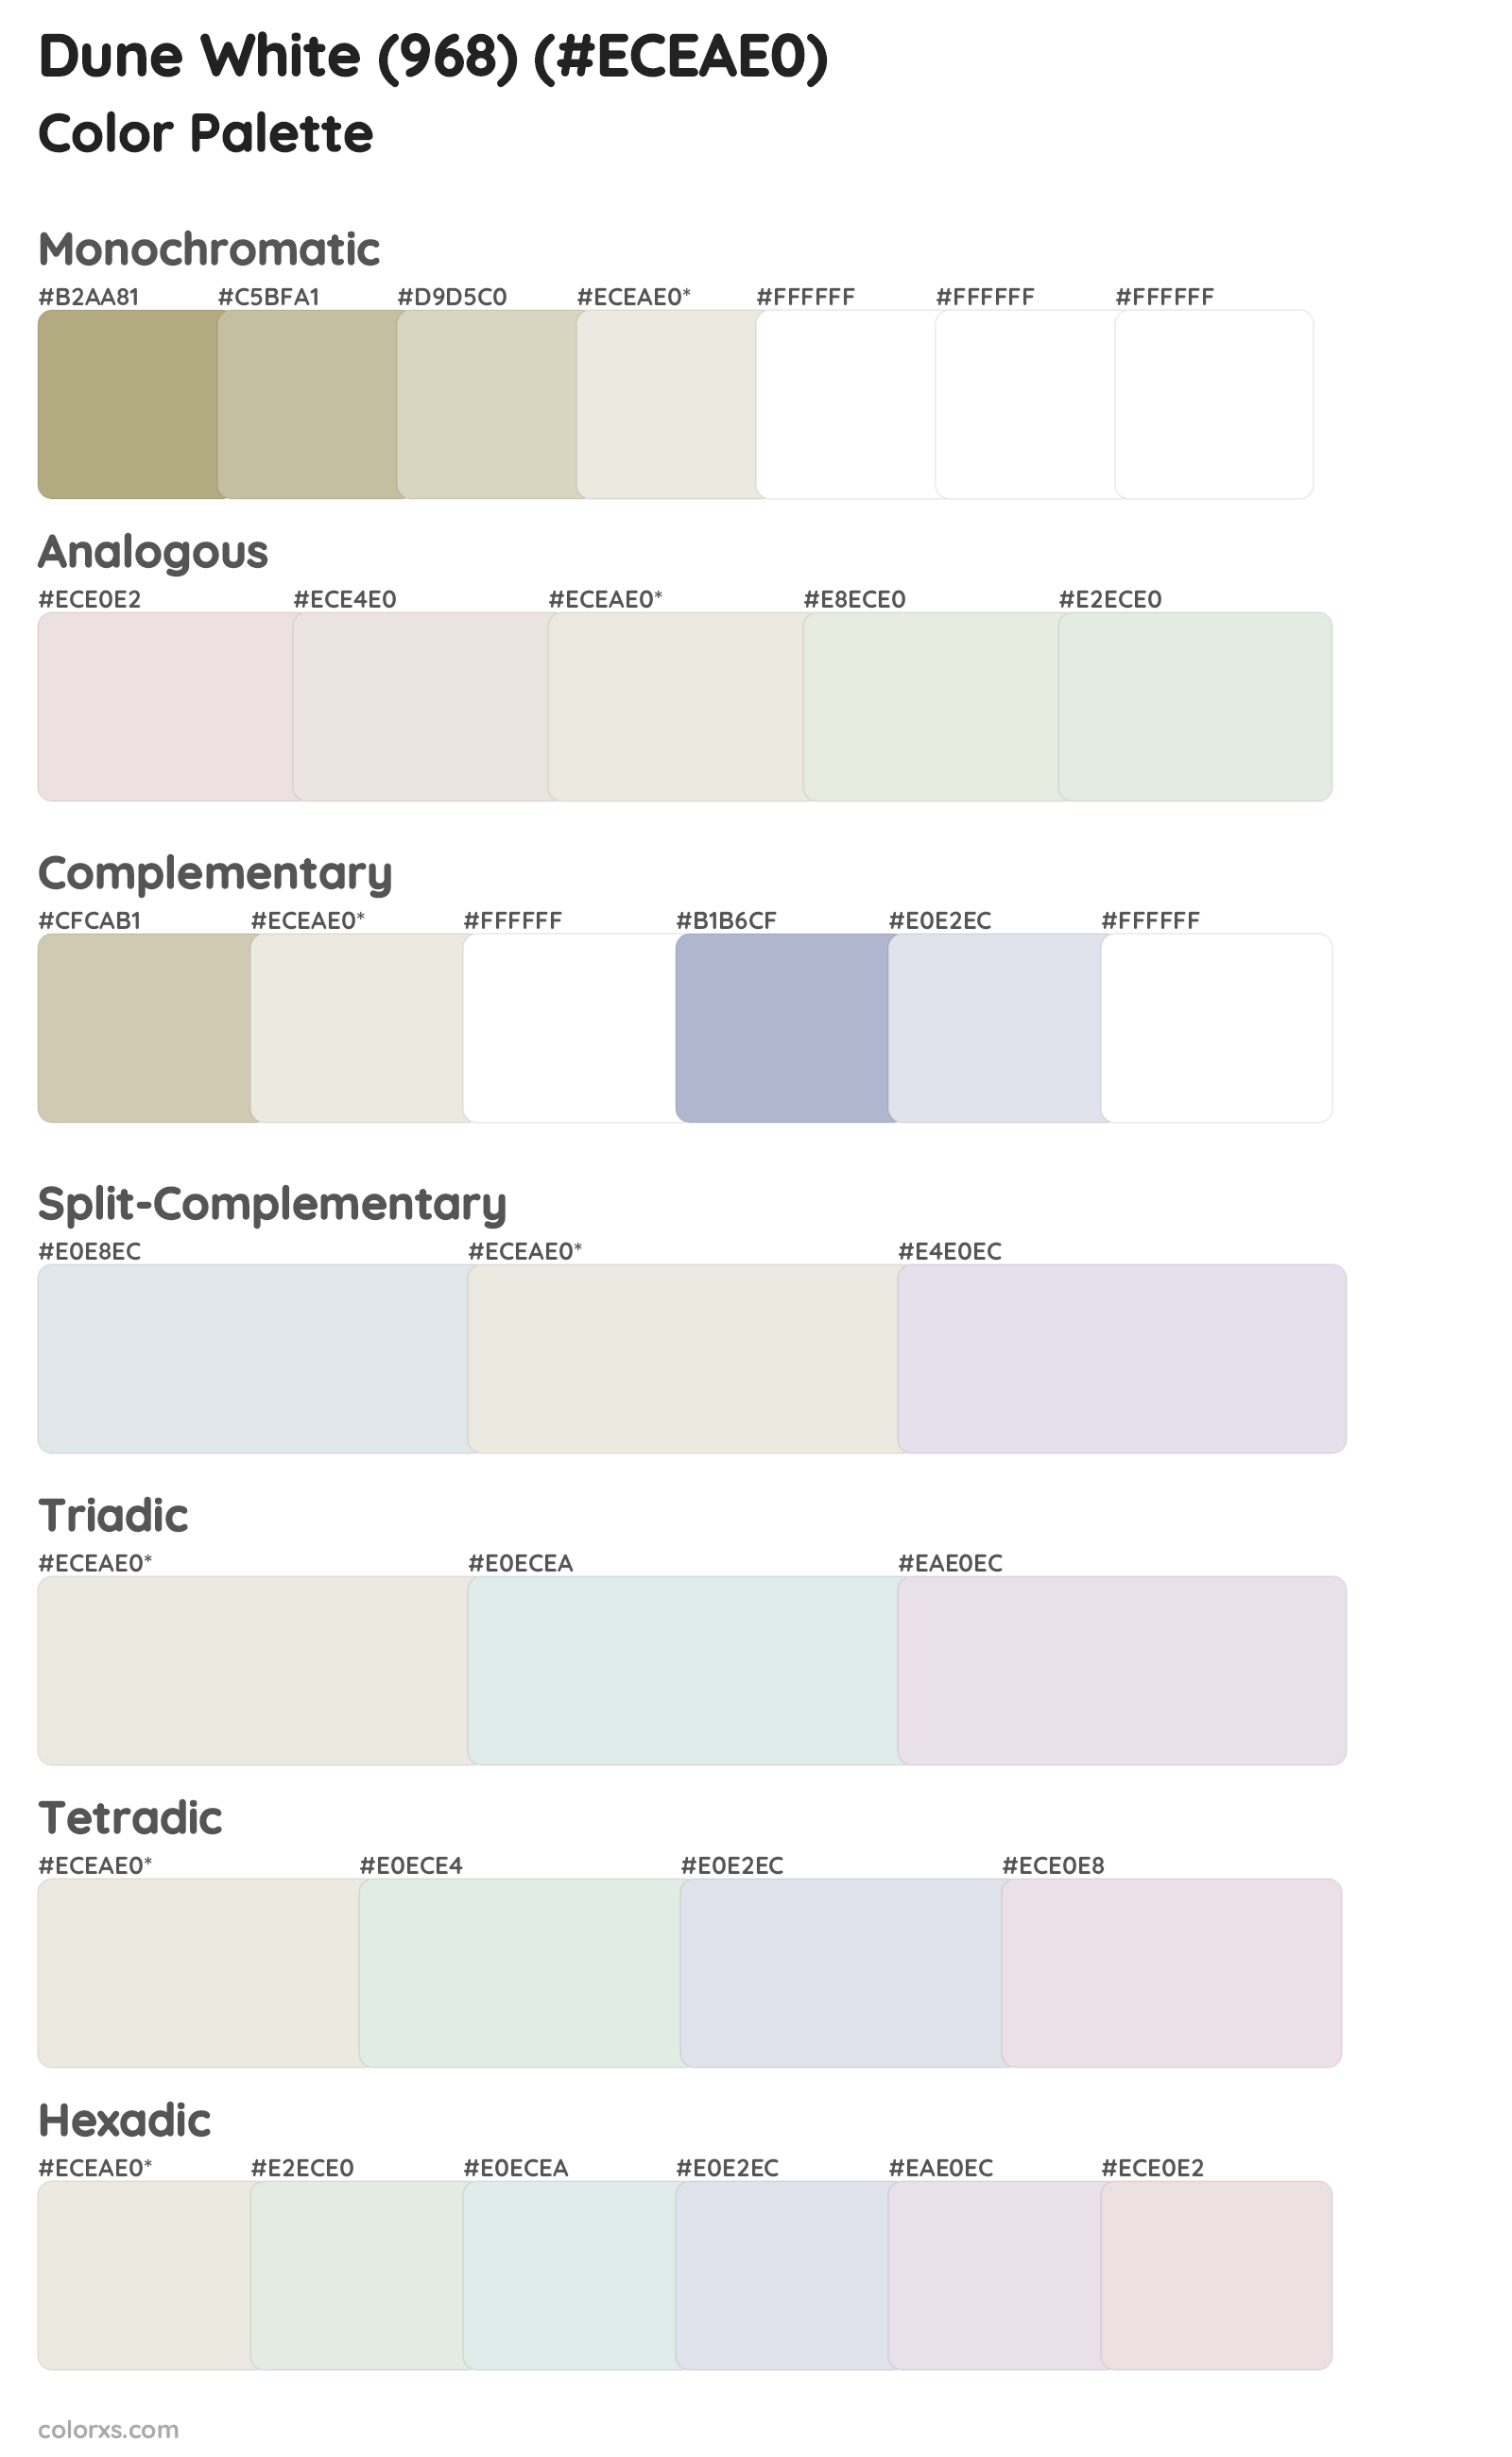 Dune White (968) Color Scheme Palettes